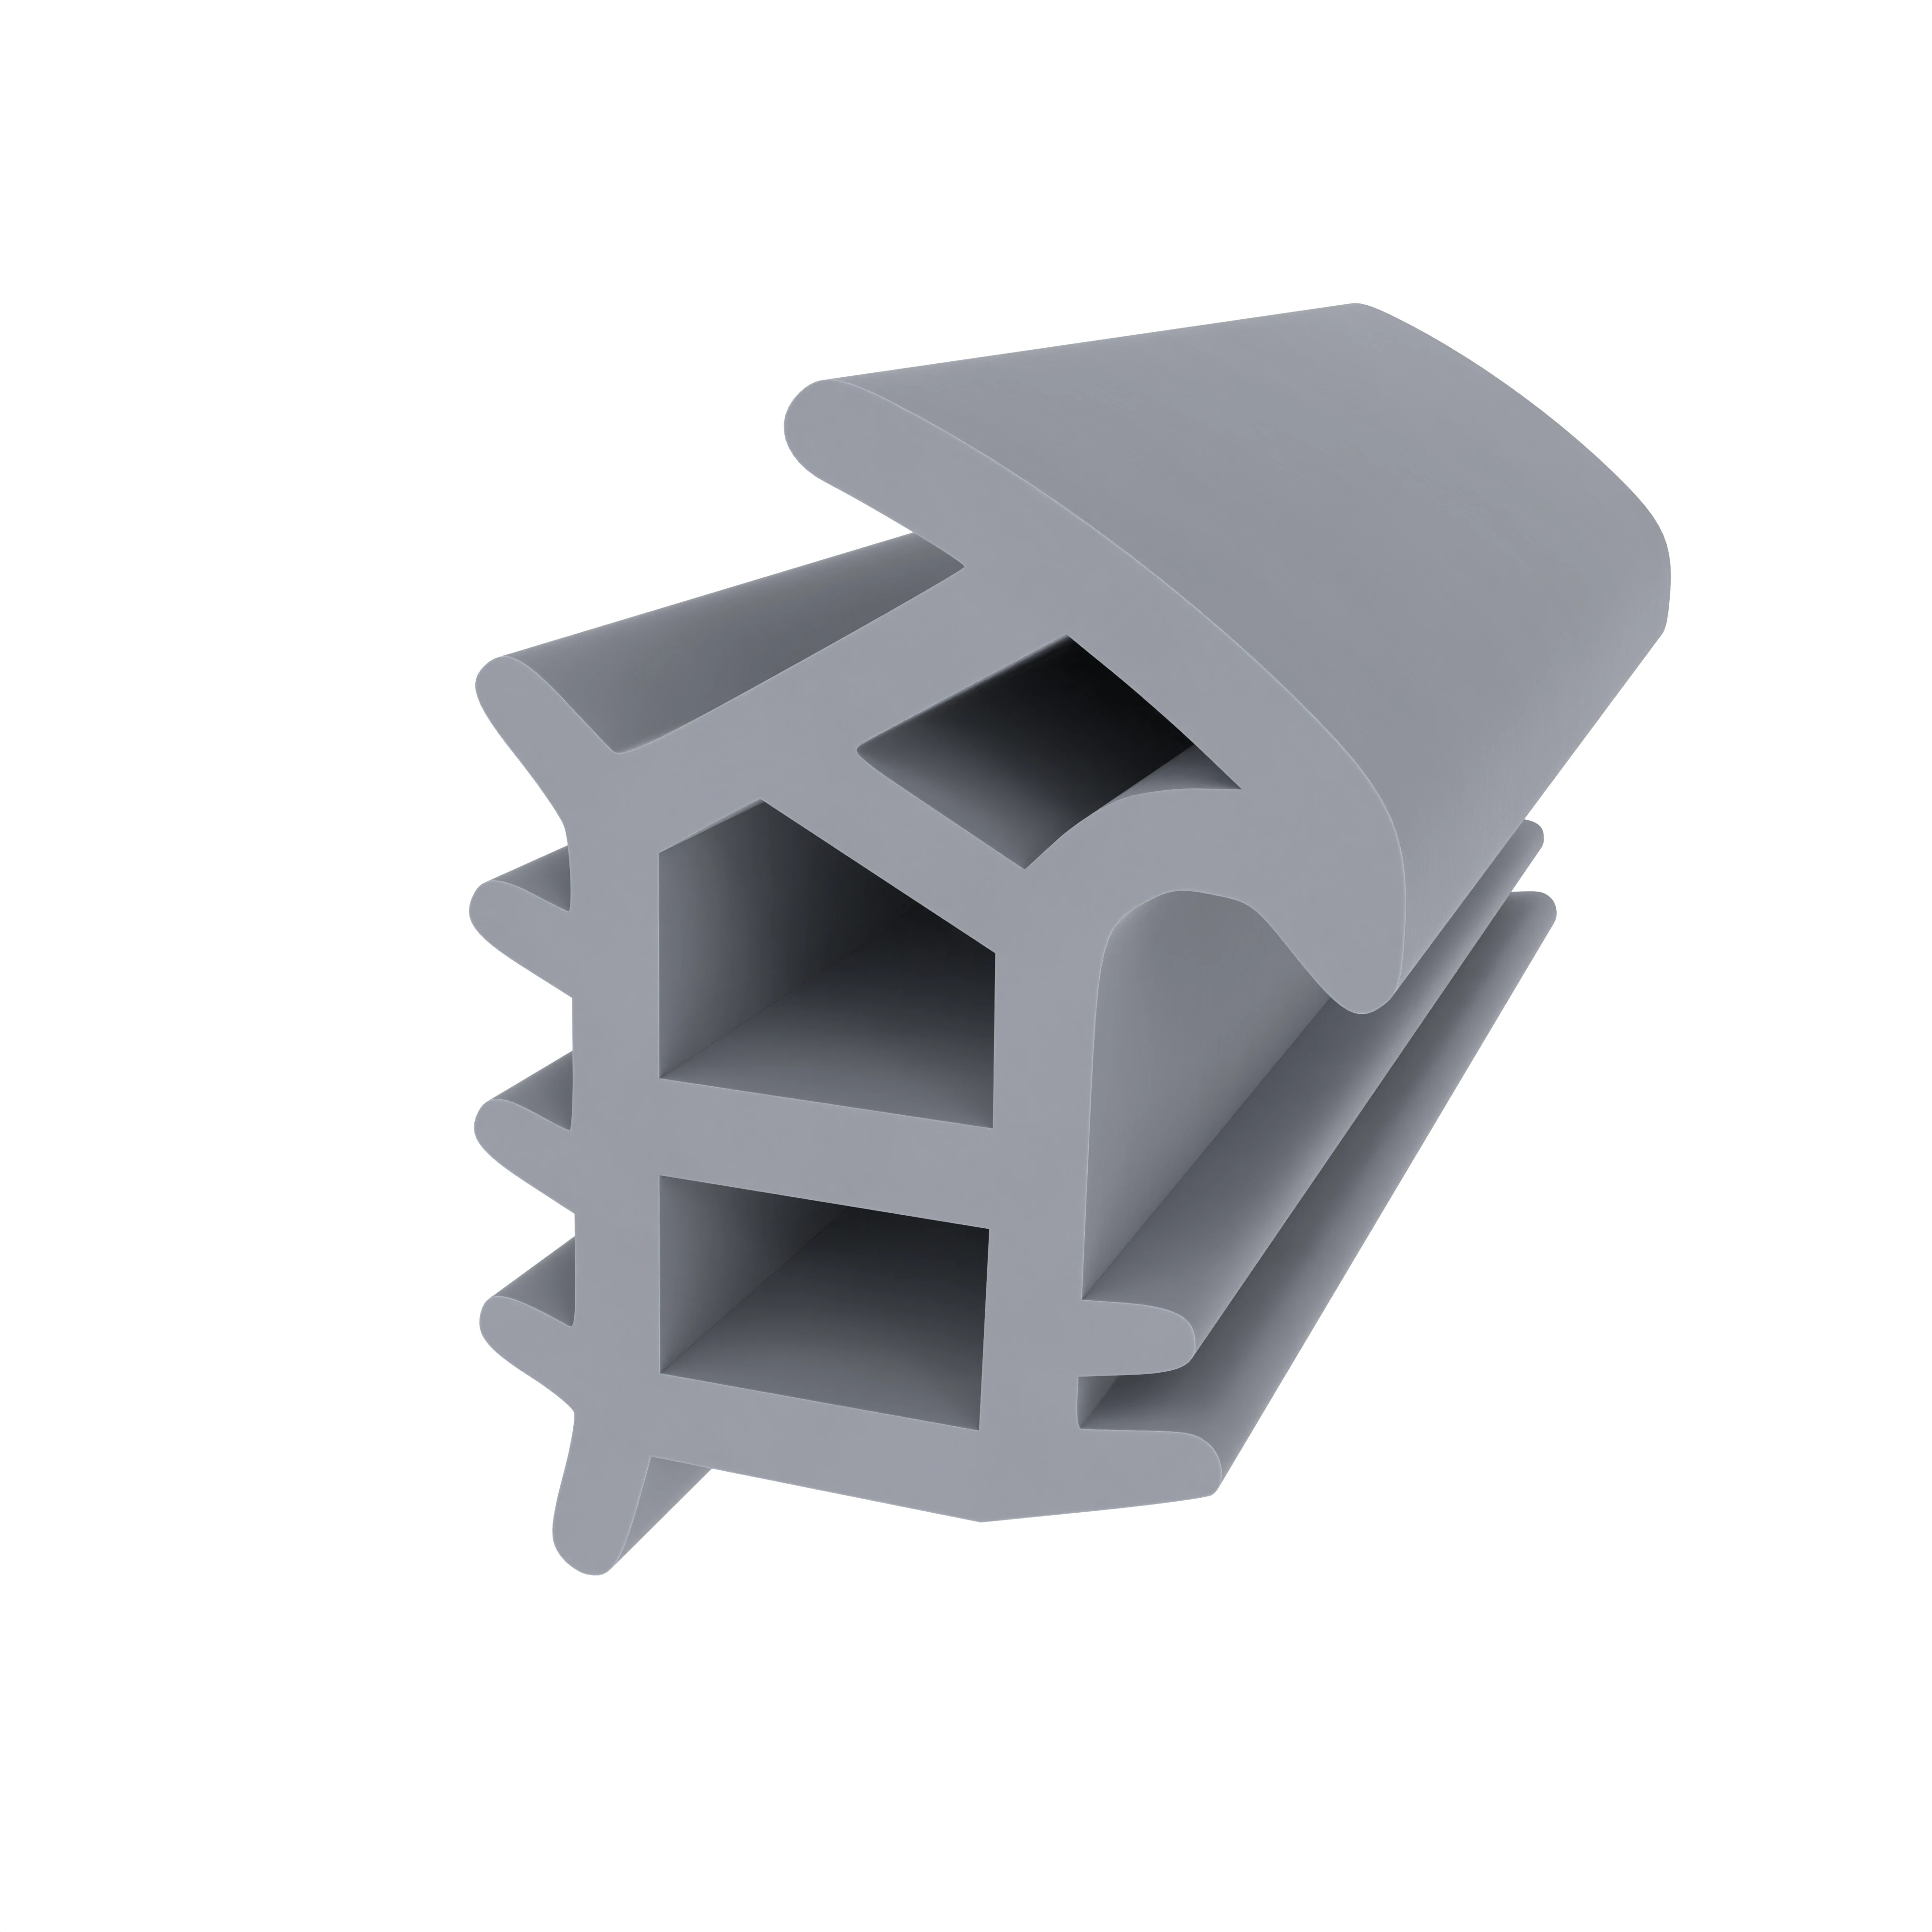 Stahlzargendichtung für Stahlrahmen | 18 mm Höhe | Farbe: grau